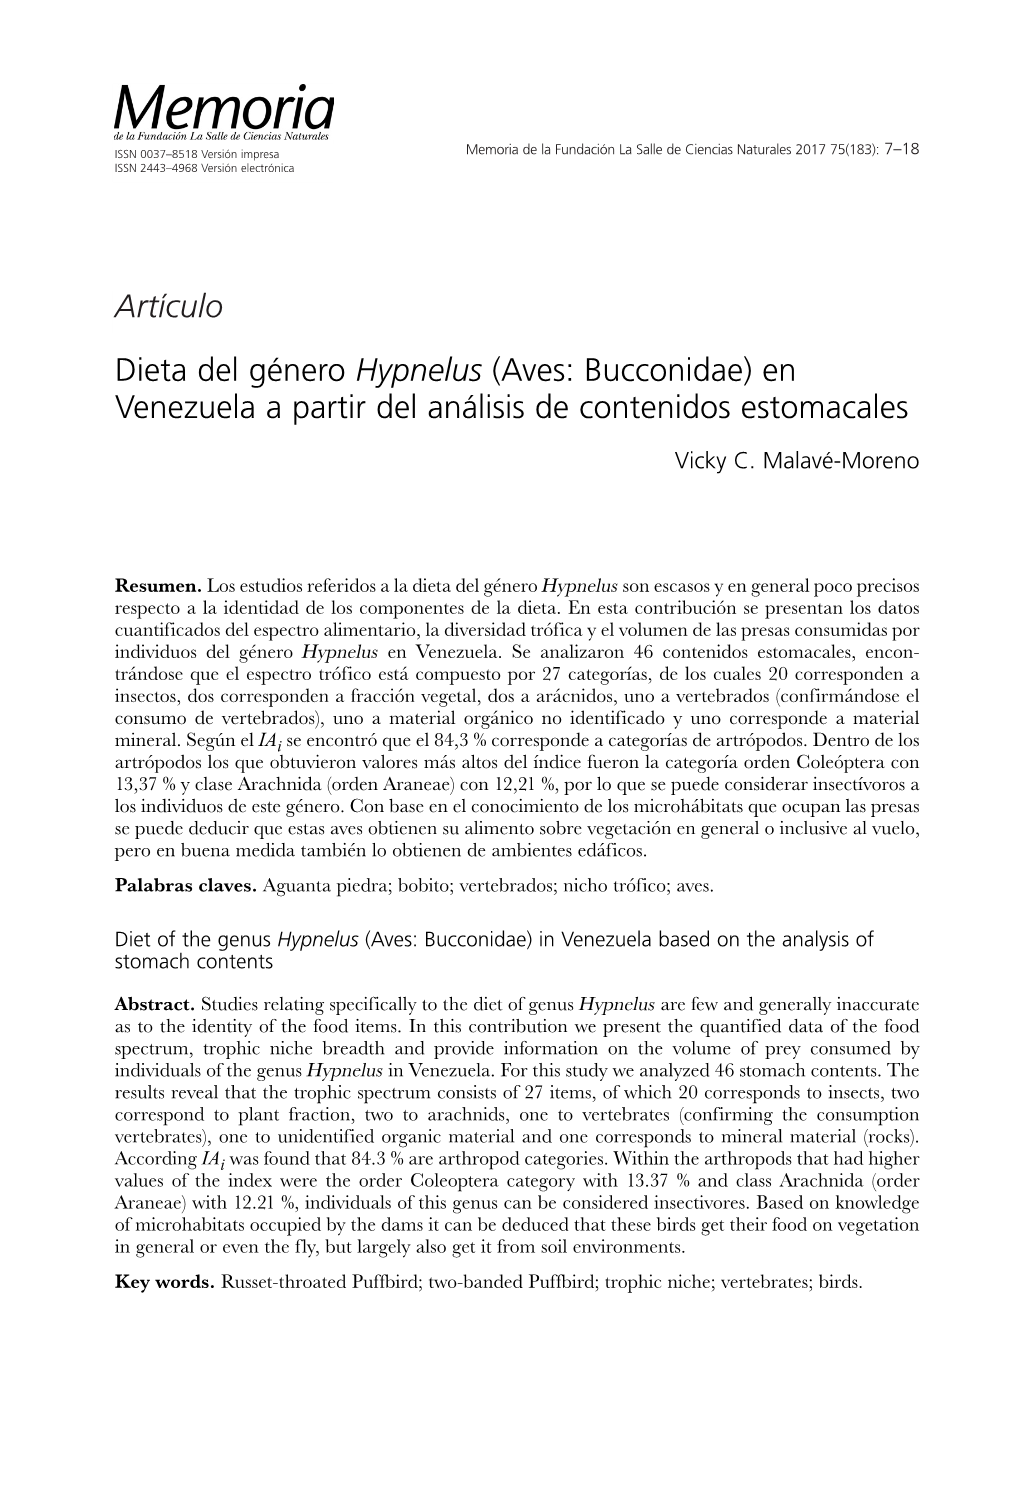 Dieta Del Género Hypnelus (Aves: Bucconidae) En Venezuela a Partir Del Análisis De Contenidos Estomacales